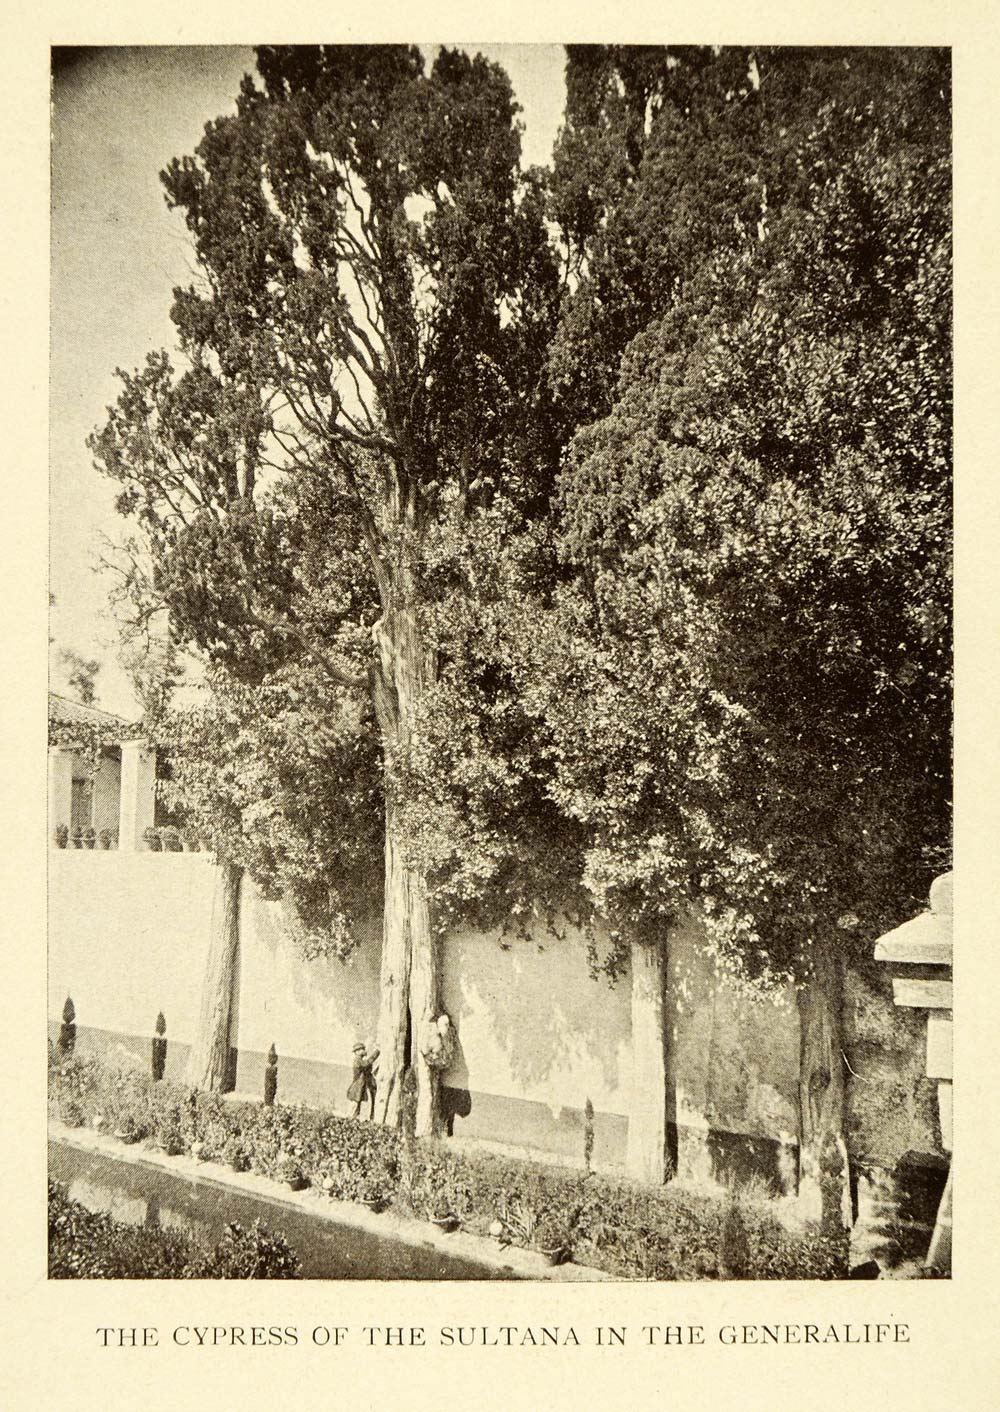 1907 Print Cypress Sultana Generalife Granada Spain Trees Wall Man Plants XGE3